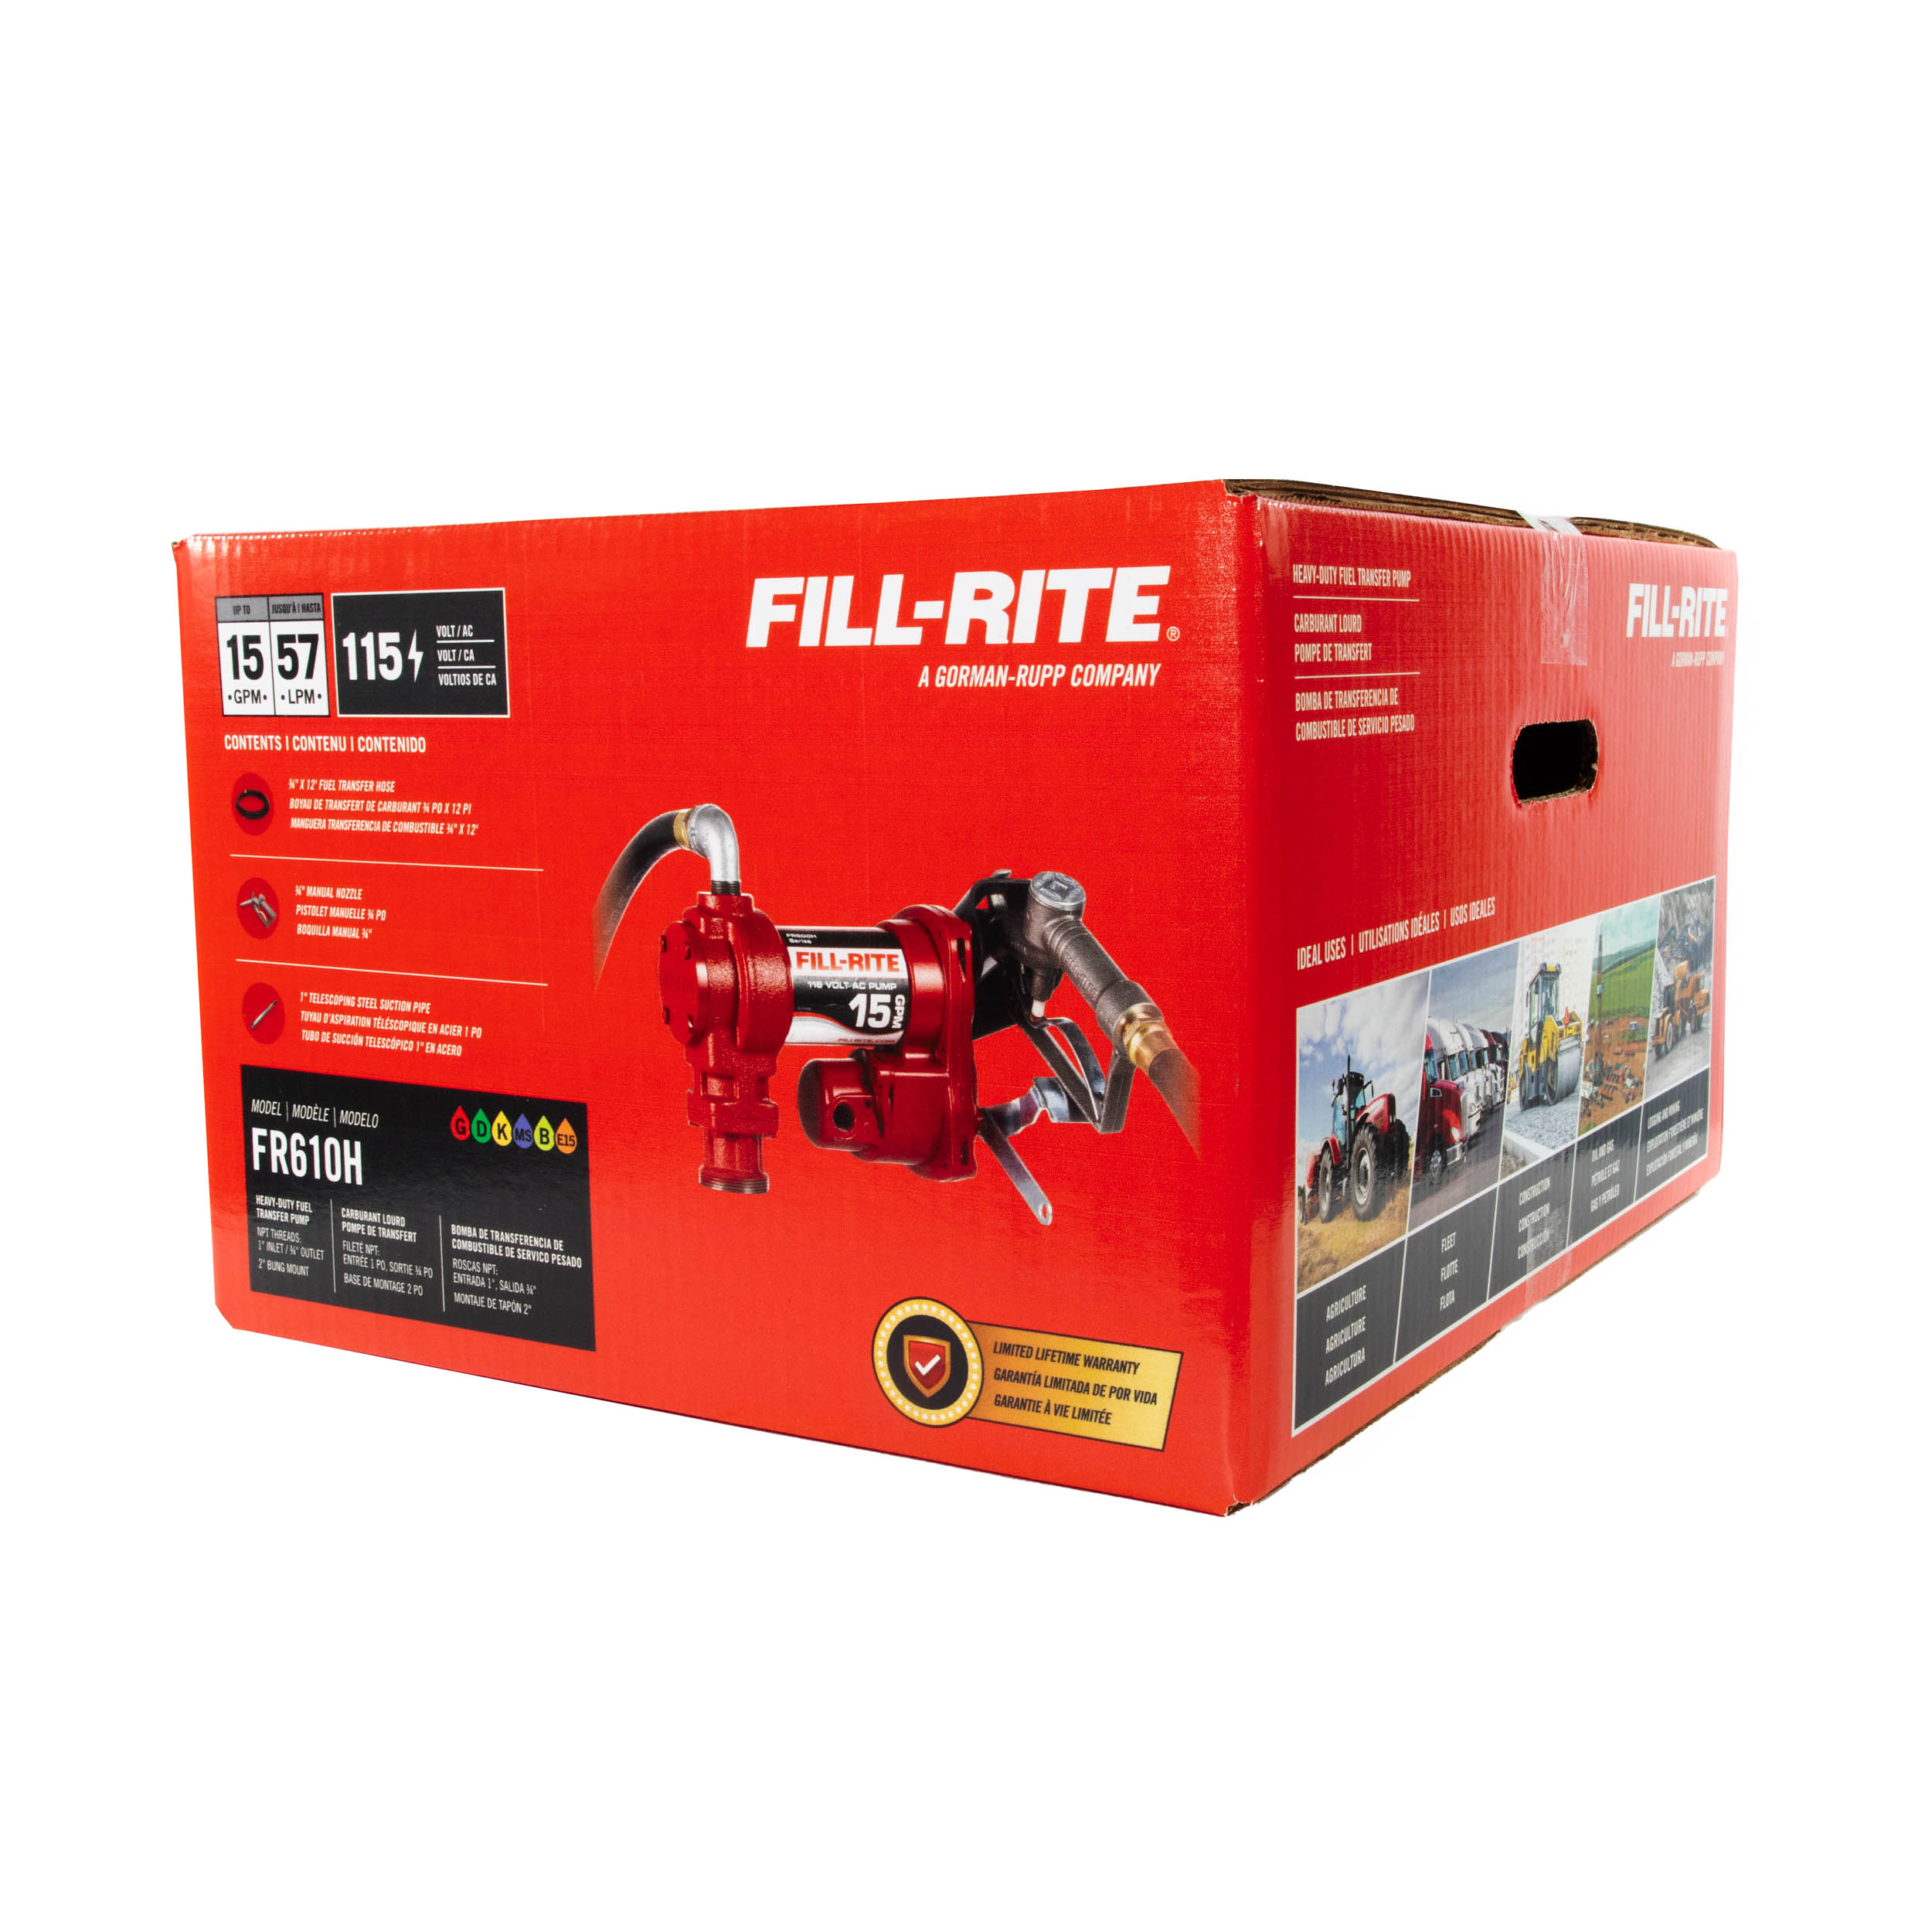 Fill-Rite-FR610H-115V-fuel-transfer-pump-in-packaging